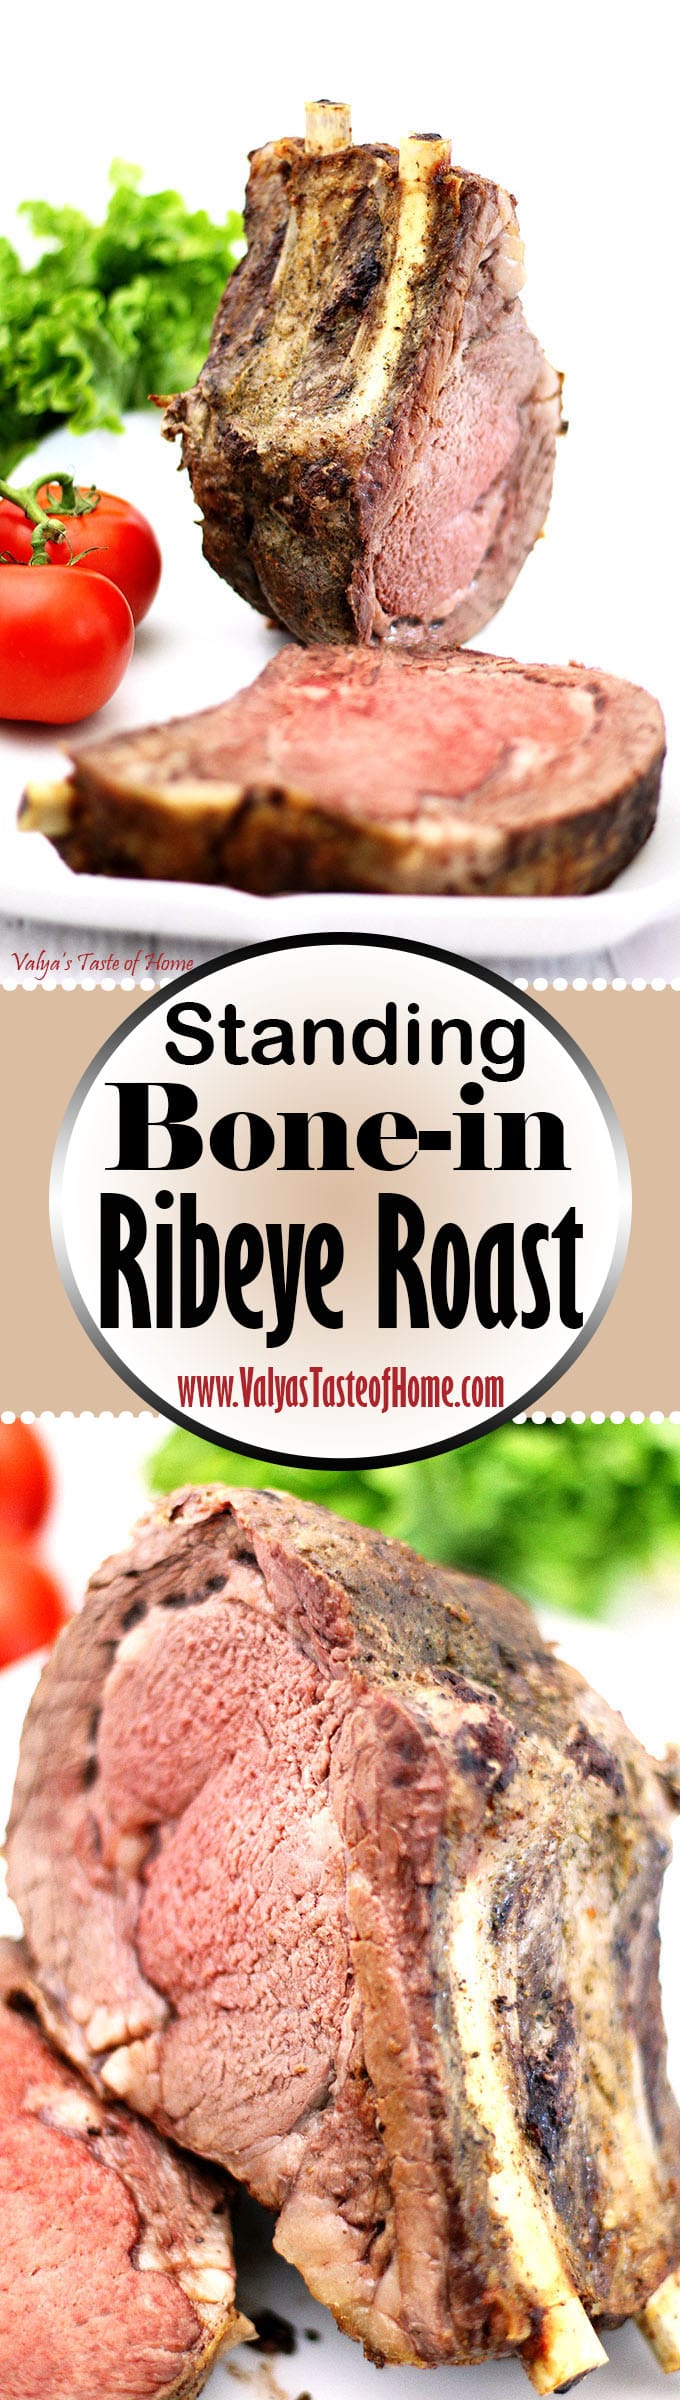 beef, bone-in rib roast, bone-in steak, juicy, ribeye steak, roasted standing bone-in steak, so delicious, soft, standing beef steak, Standing Bone-in Ribeye Roast Recipe, steak, tender